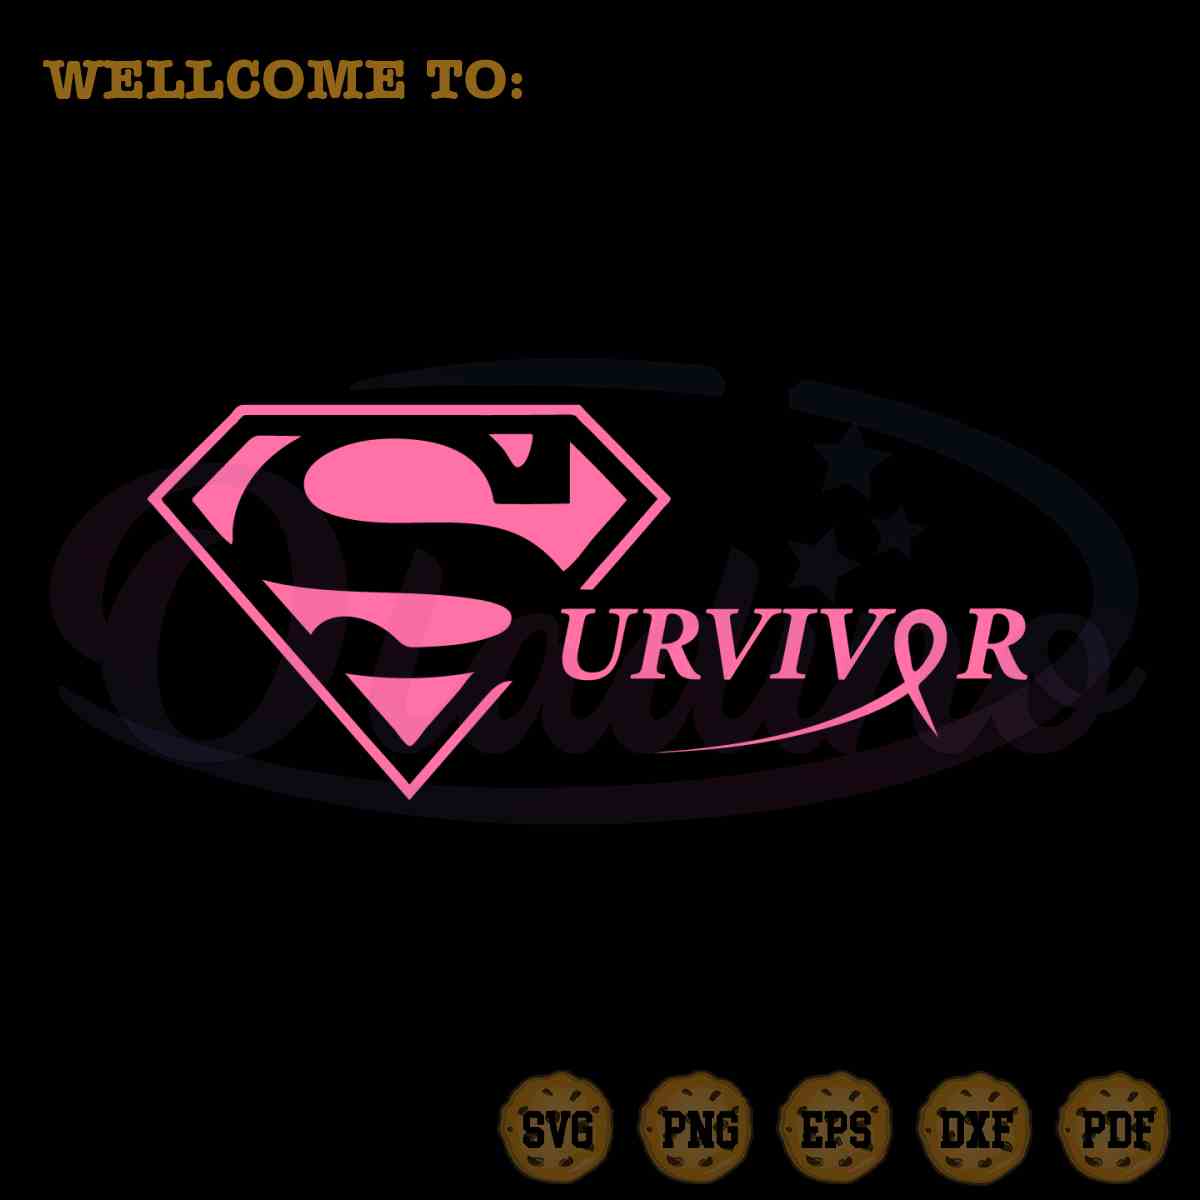 Survivor Breast Cancer SVG Pink Ribbon Awareness Cutting Digital File